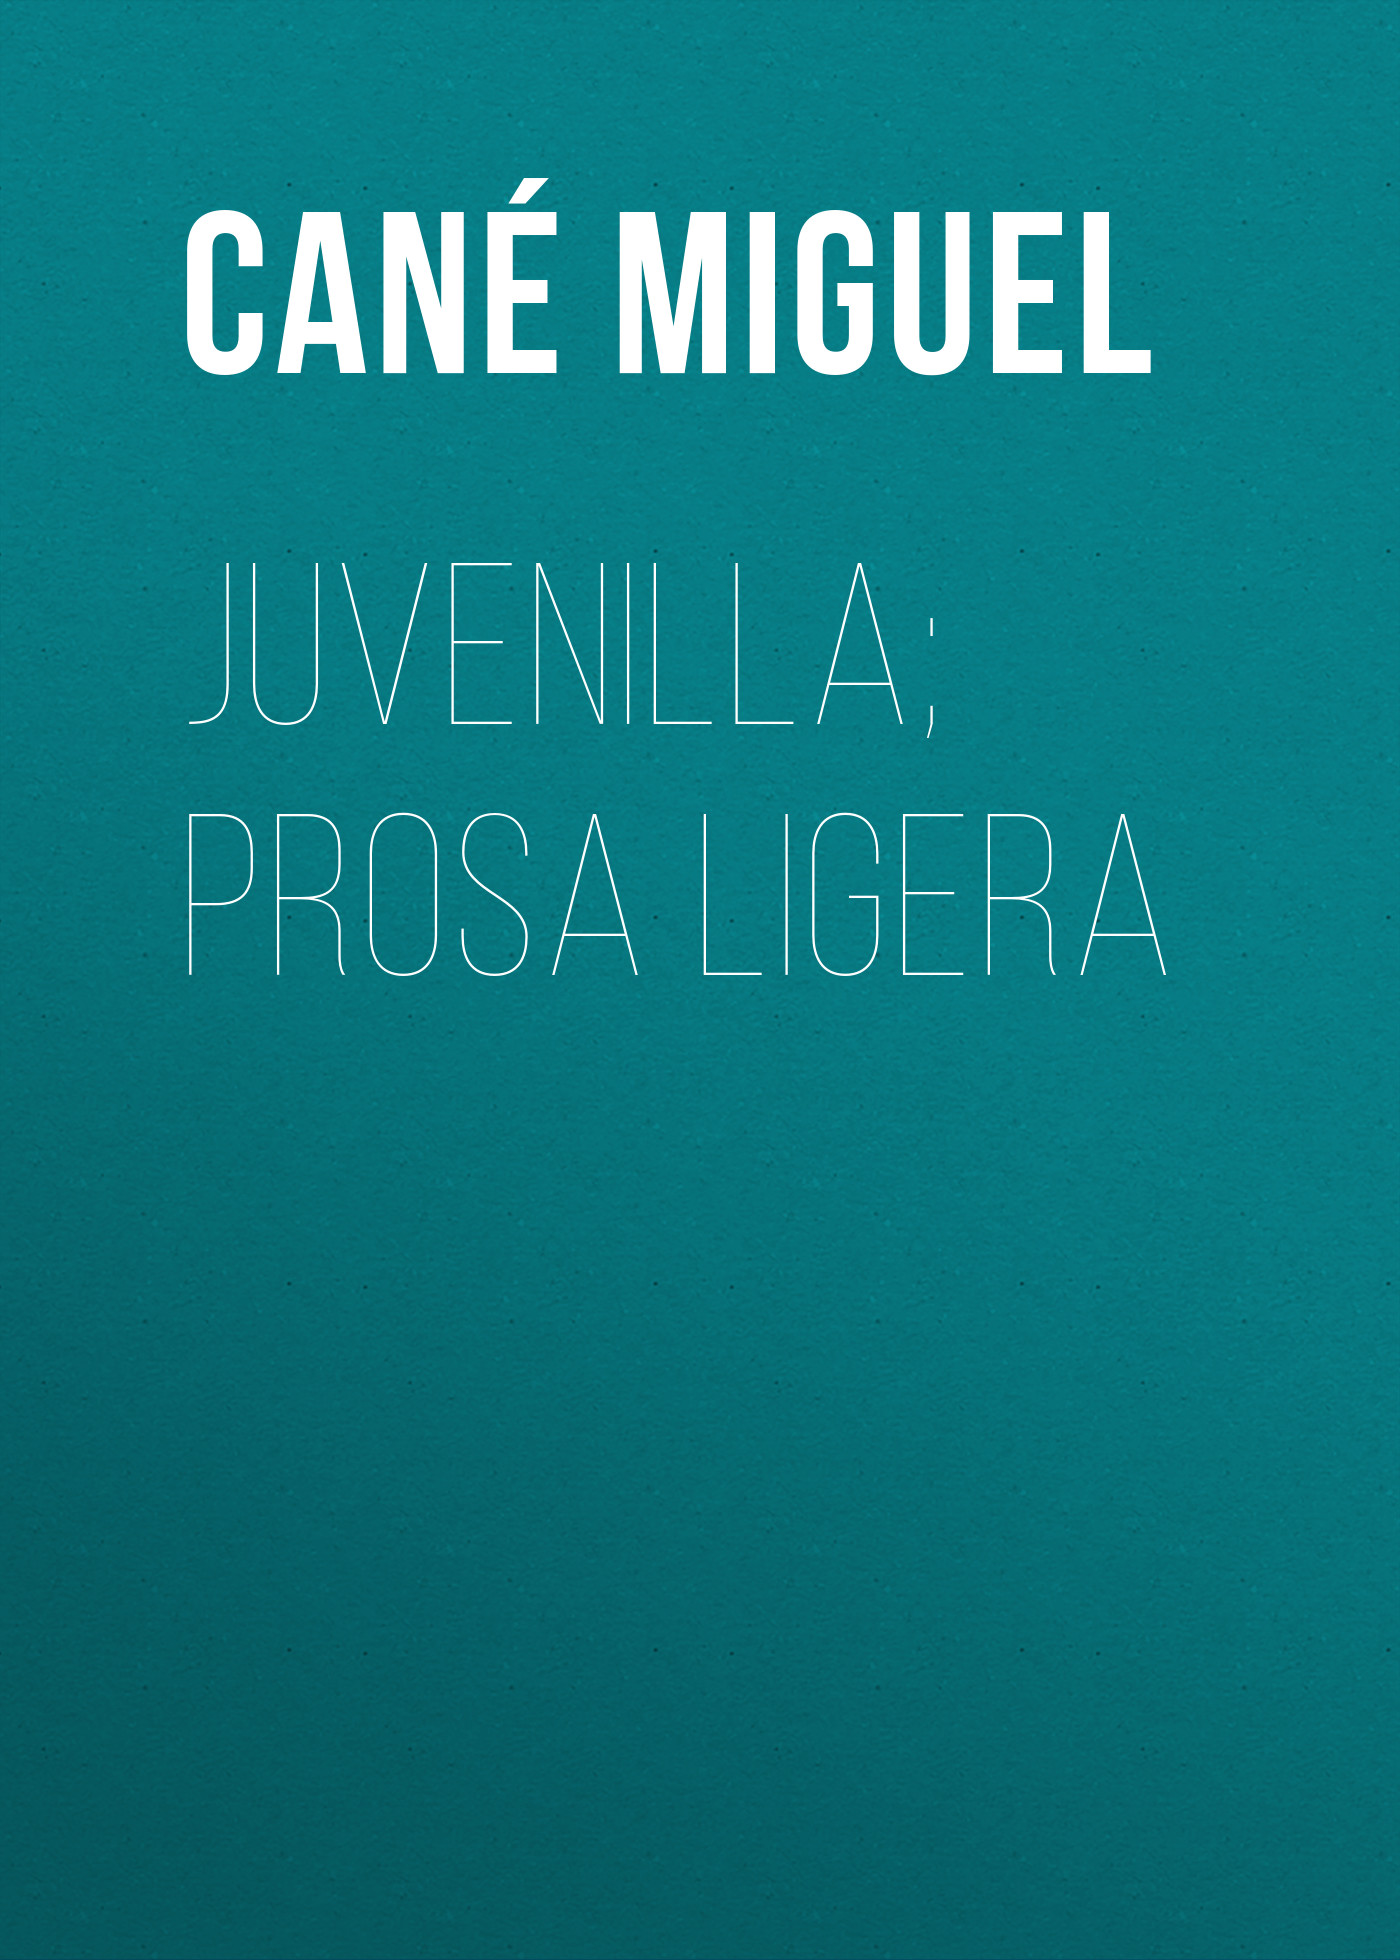 Книга Juvenilla; Prosa ligera из серии , созданная Miguel Cané, может относится к жанру Зарубежная классика, Зарубежная старинная литература, Иностранные языки. Стоимость электронной книги Juvenilla; Prosa ligera с идентификатором 24181212 составляет 0 руб.